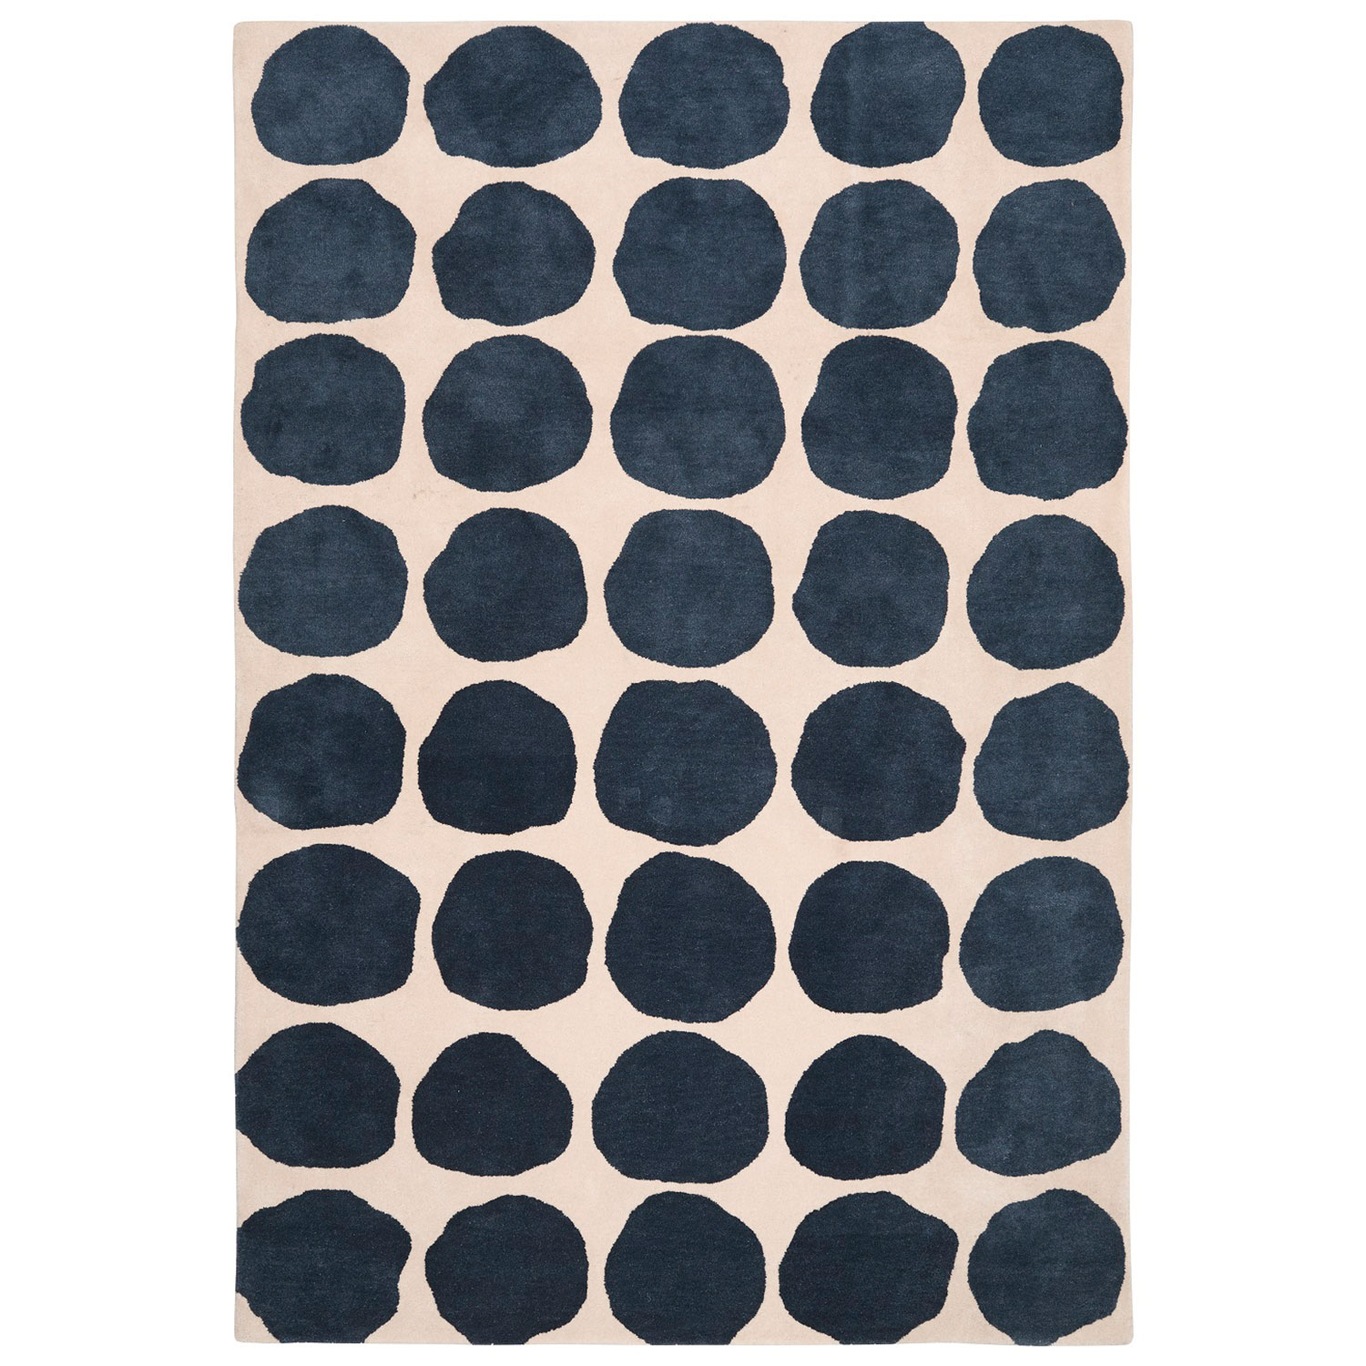 Dots Matto 180x270cm, Khaki/Sininen Melange